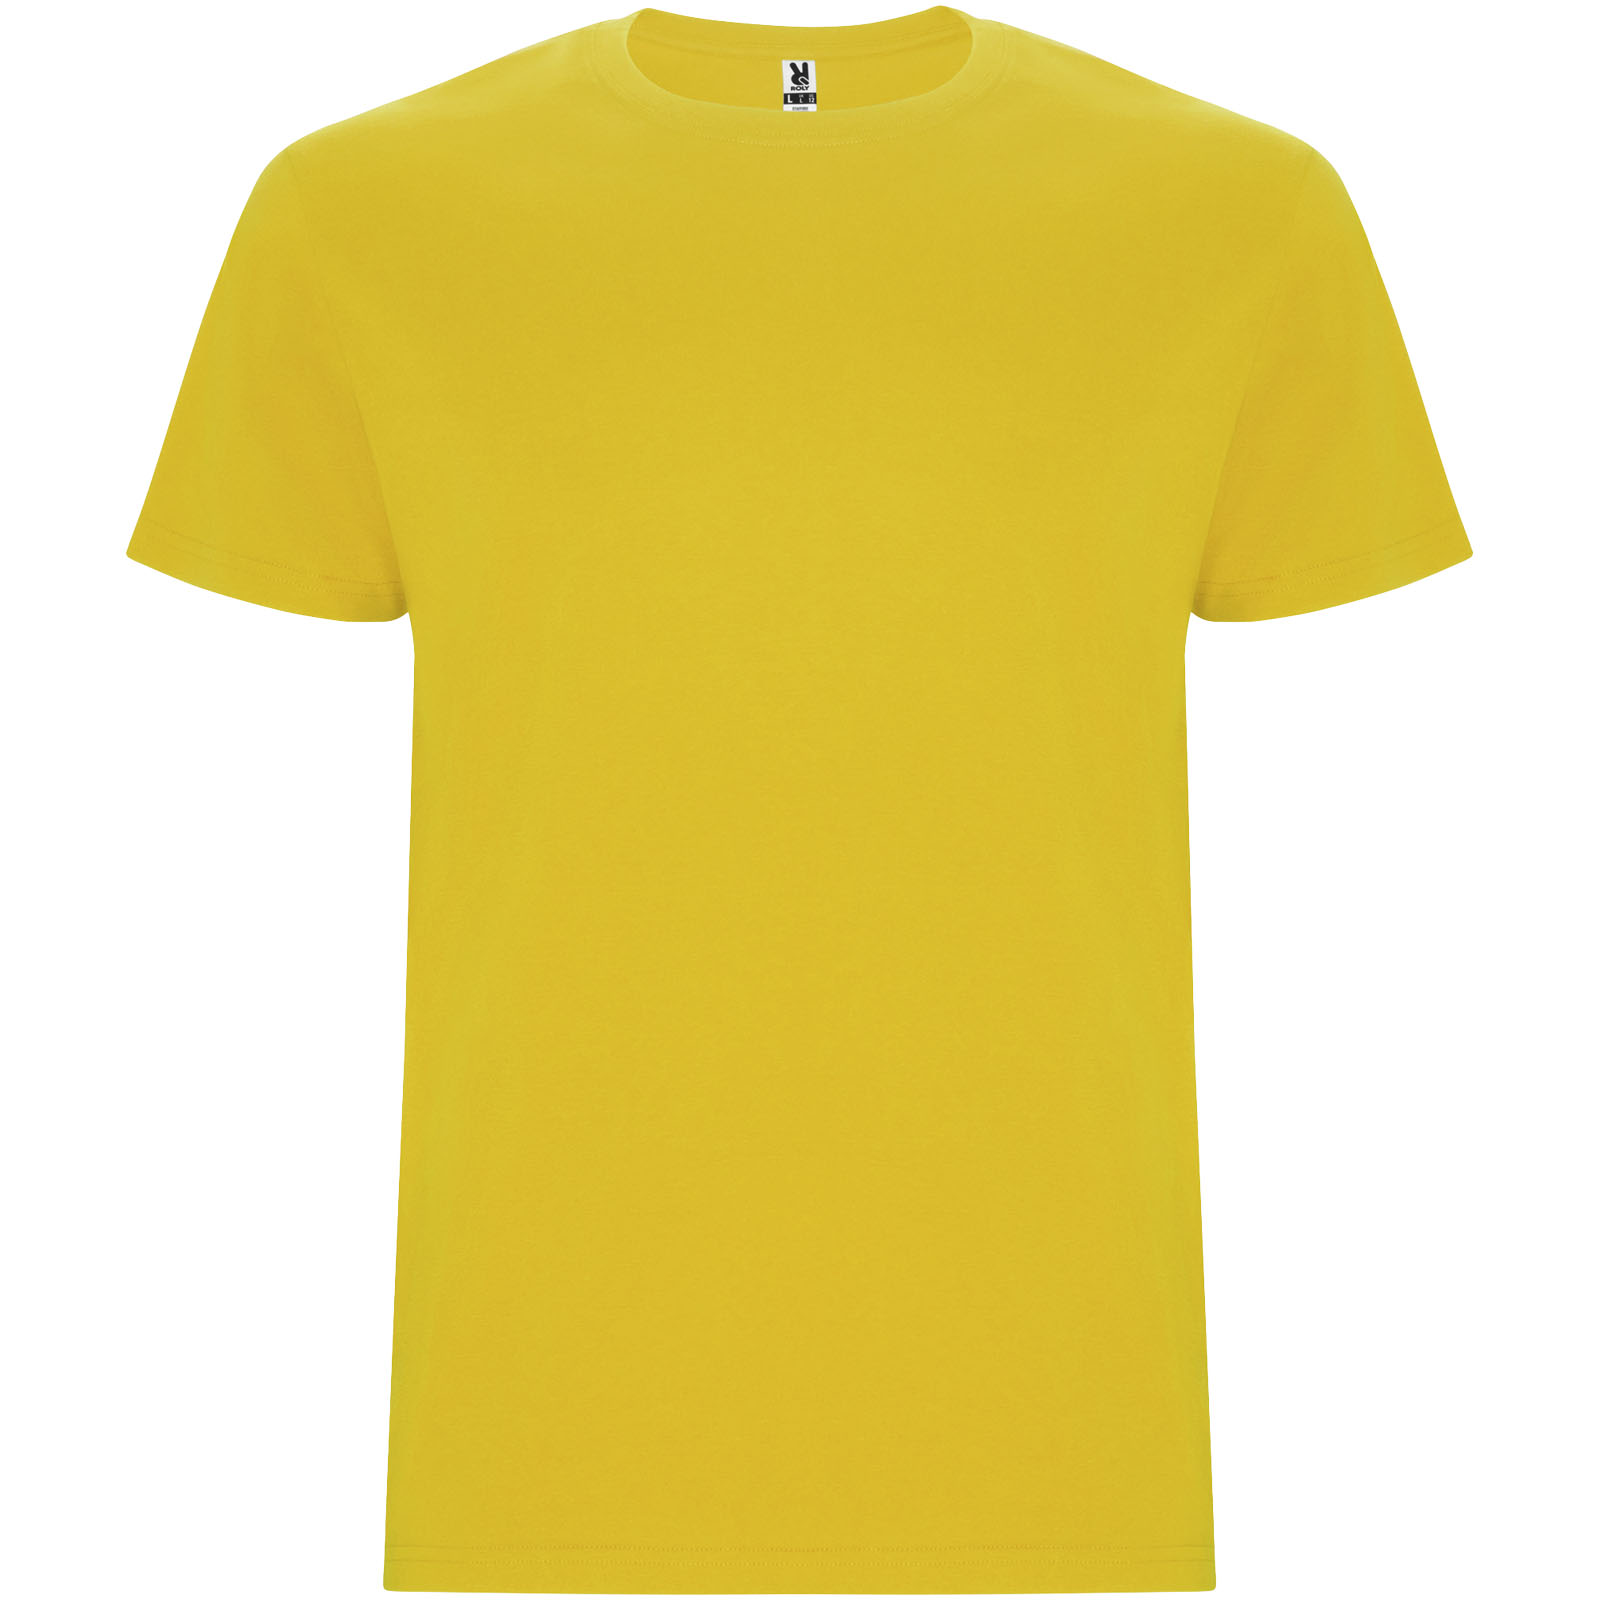 Vêtements - T-shirt Stafford à manches courtes pour homme